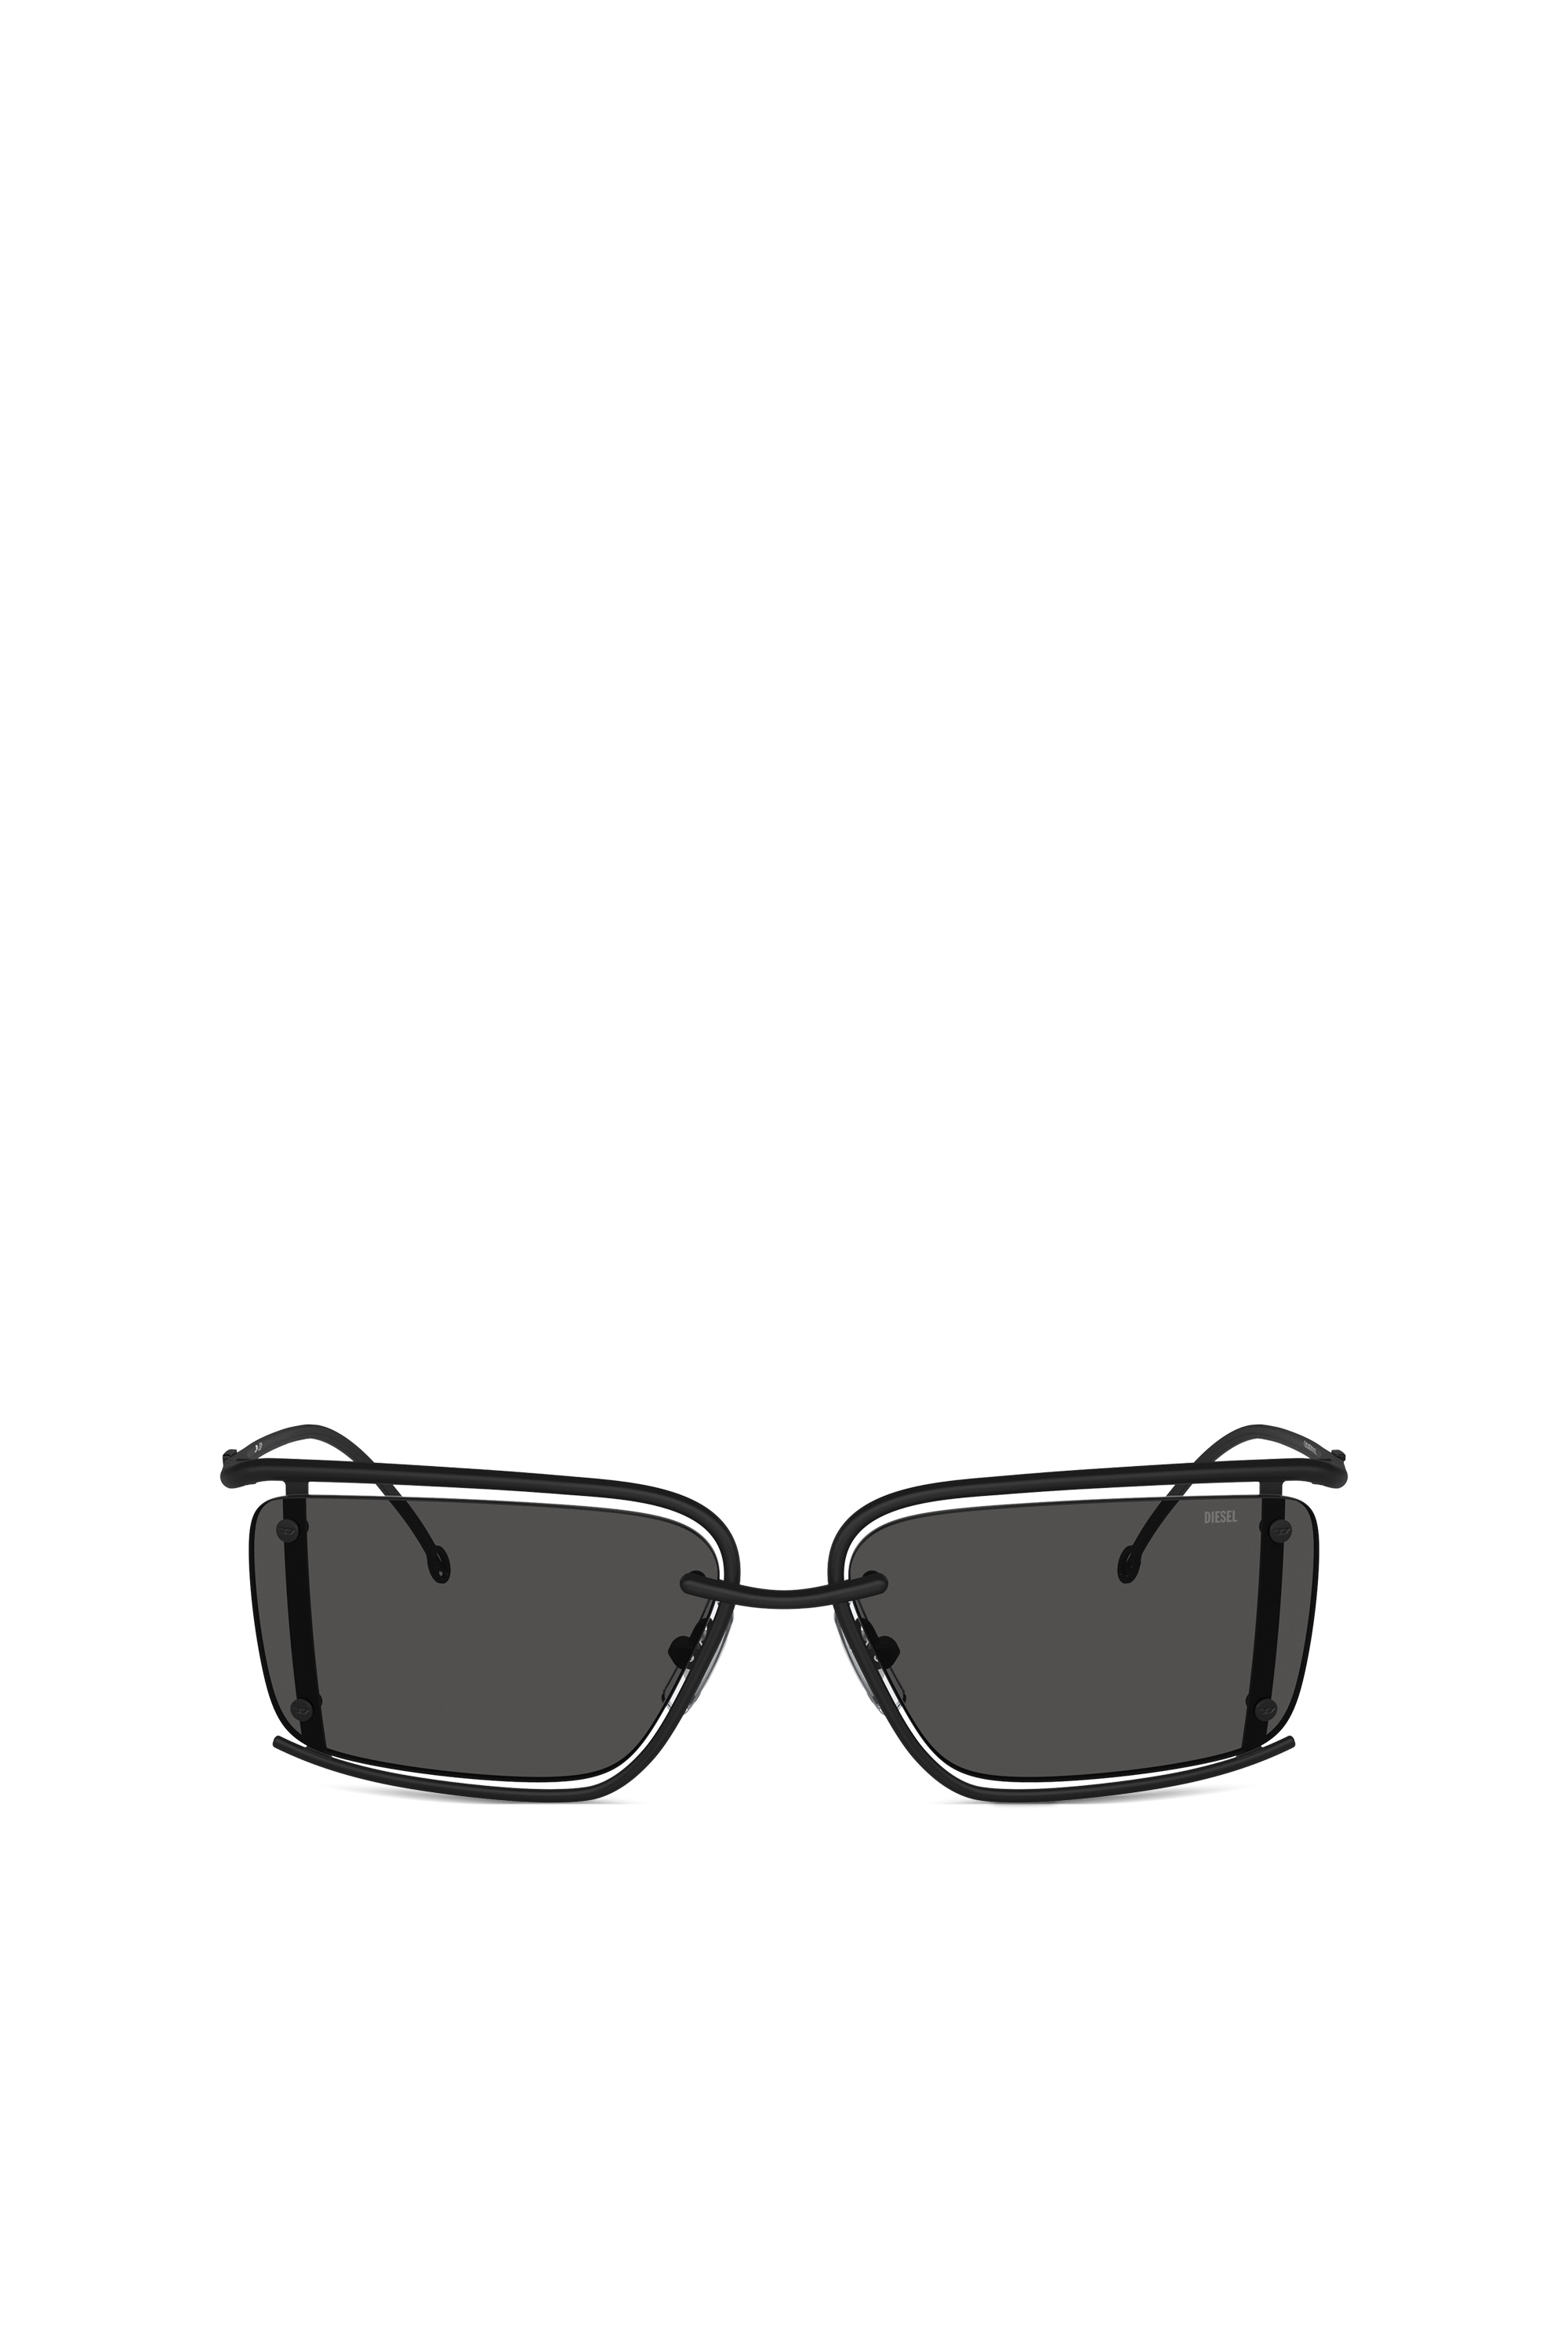 Diesel - Rechteckiges Modell Brille - Sonnenbrille - Unisex - Schwarz